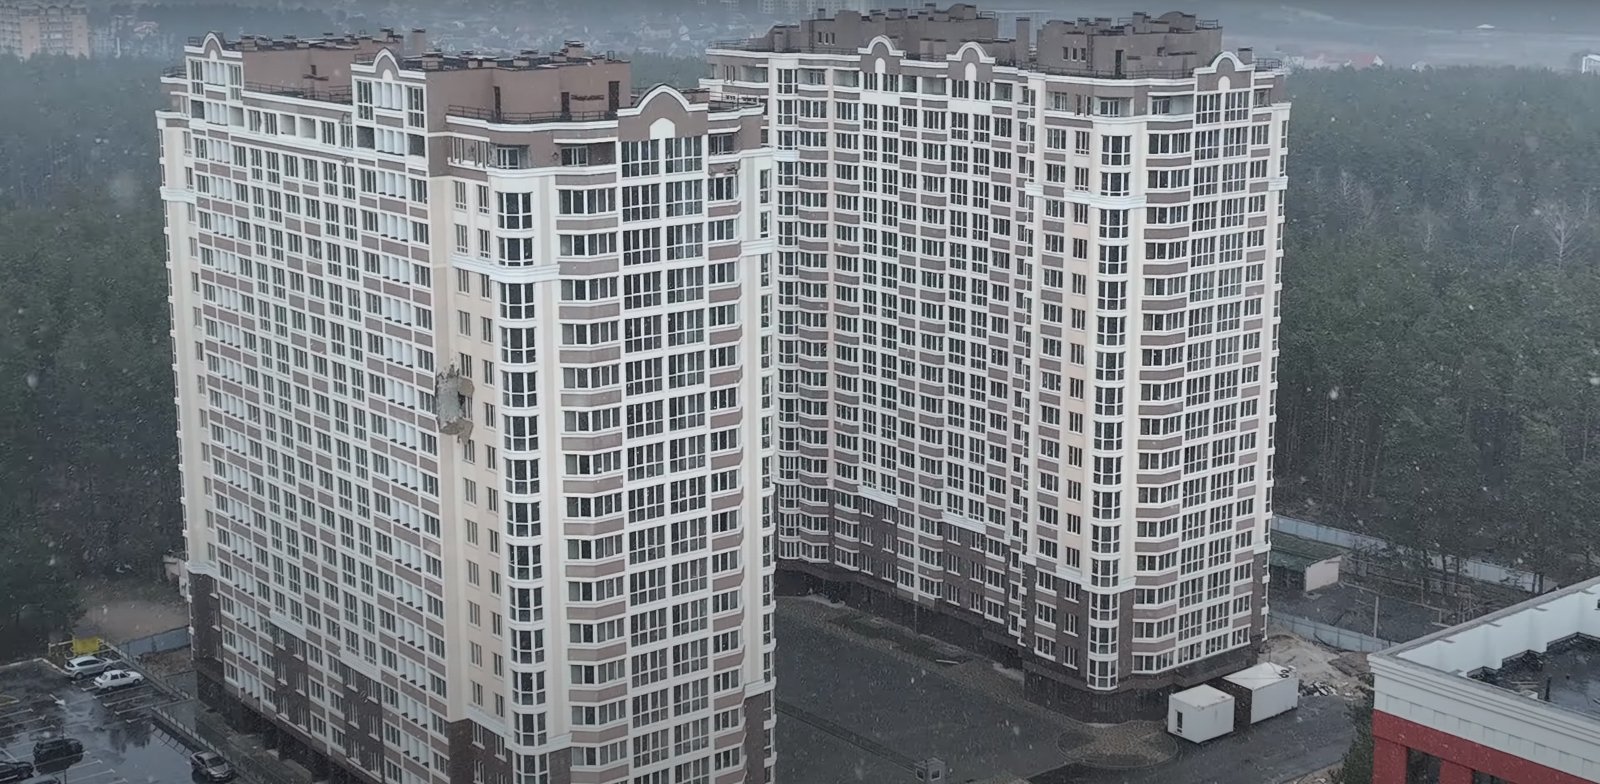 Південна околиця Ірпеня, найближча до Києва. ЖК “Сяйво-2” на понад 500 квартир. Ураження зовнішніх стін у порівнянні з іншими – мінімальні. На будинки накладався арешт у 2019 році, введені в експлуатацію у 2020-му. Станом на сьогодні будинки майже не заселені, інфраструктура поблизу – нерозвинена